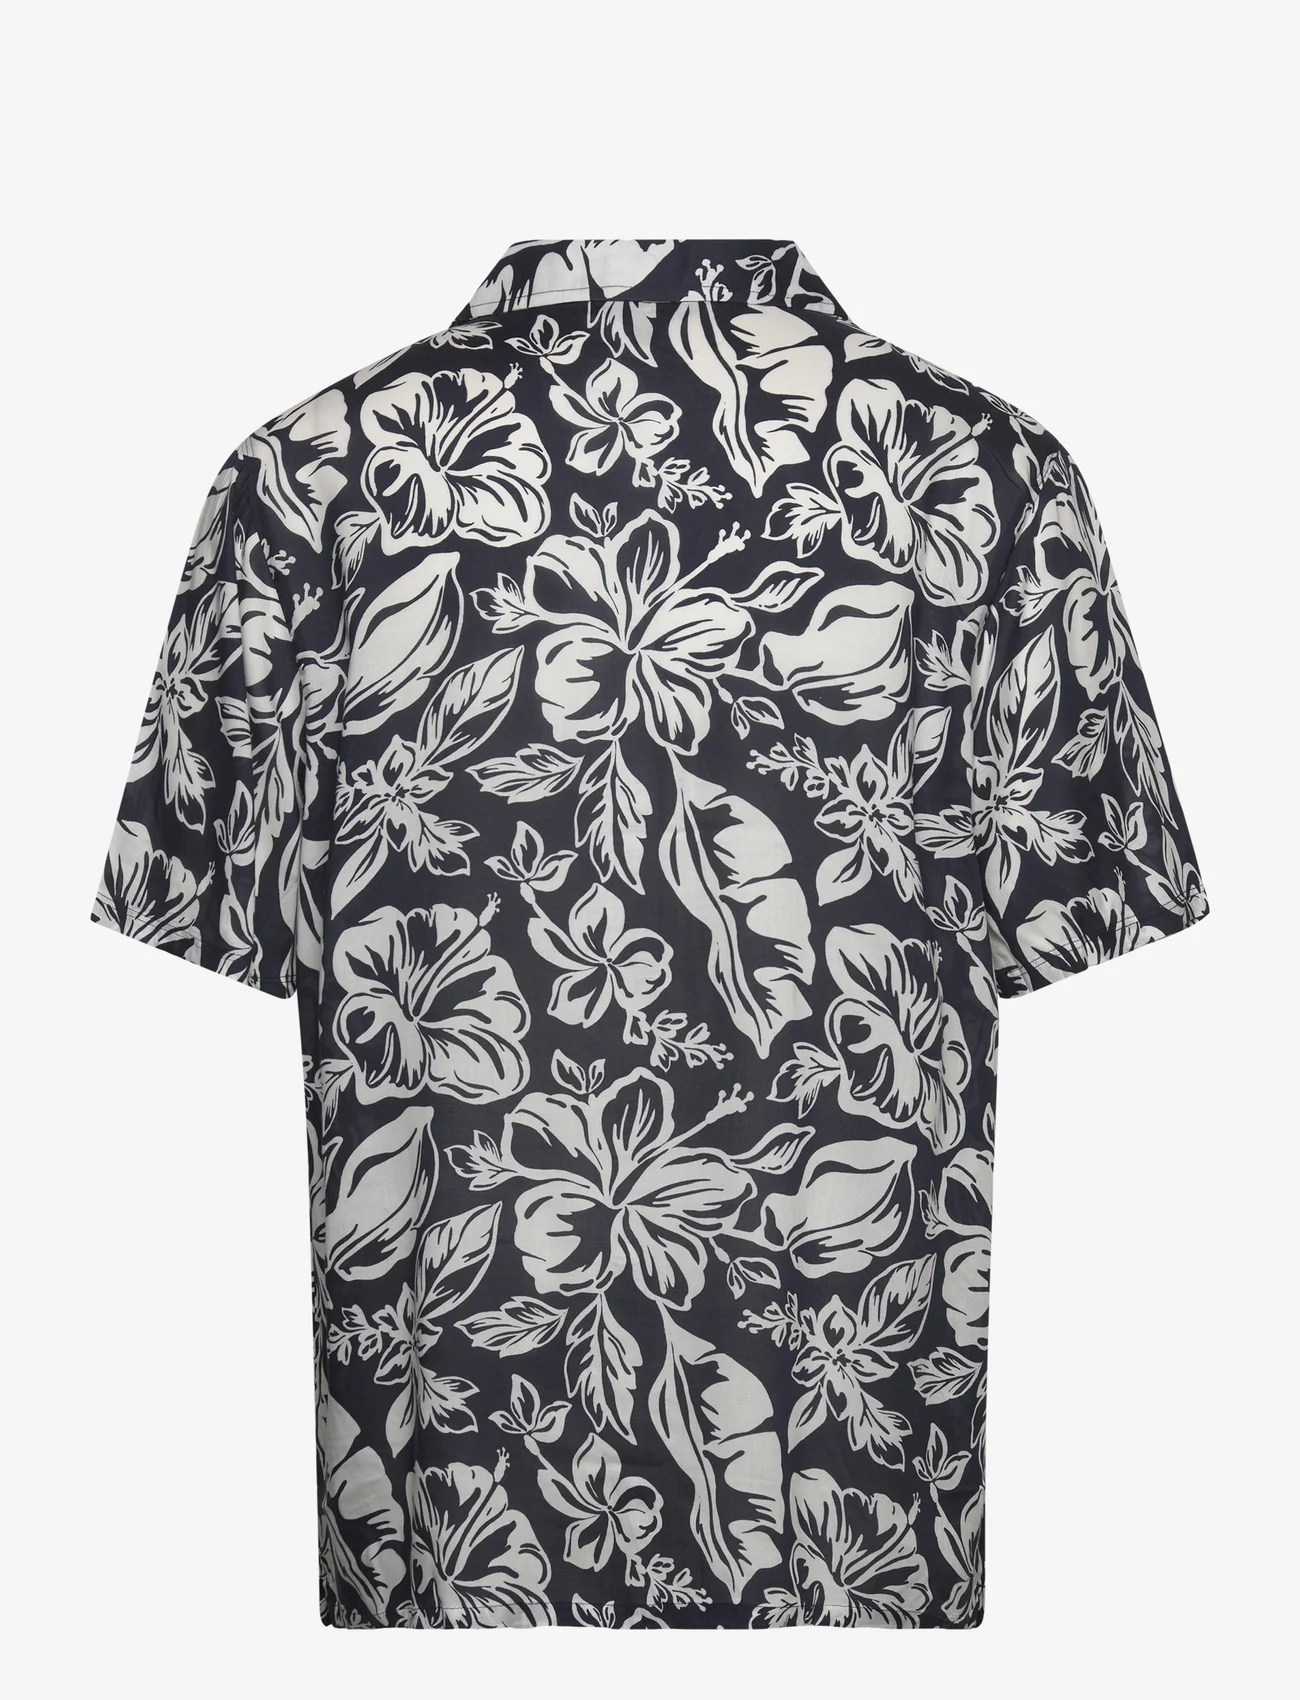 Tommy Hilfiger - BOWLING SHIRT - kortærmede skjorter - vintage tropical prt desert sky - 1